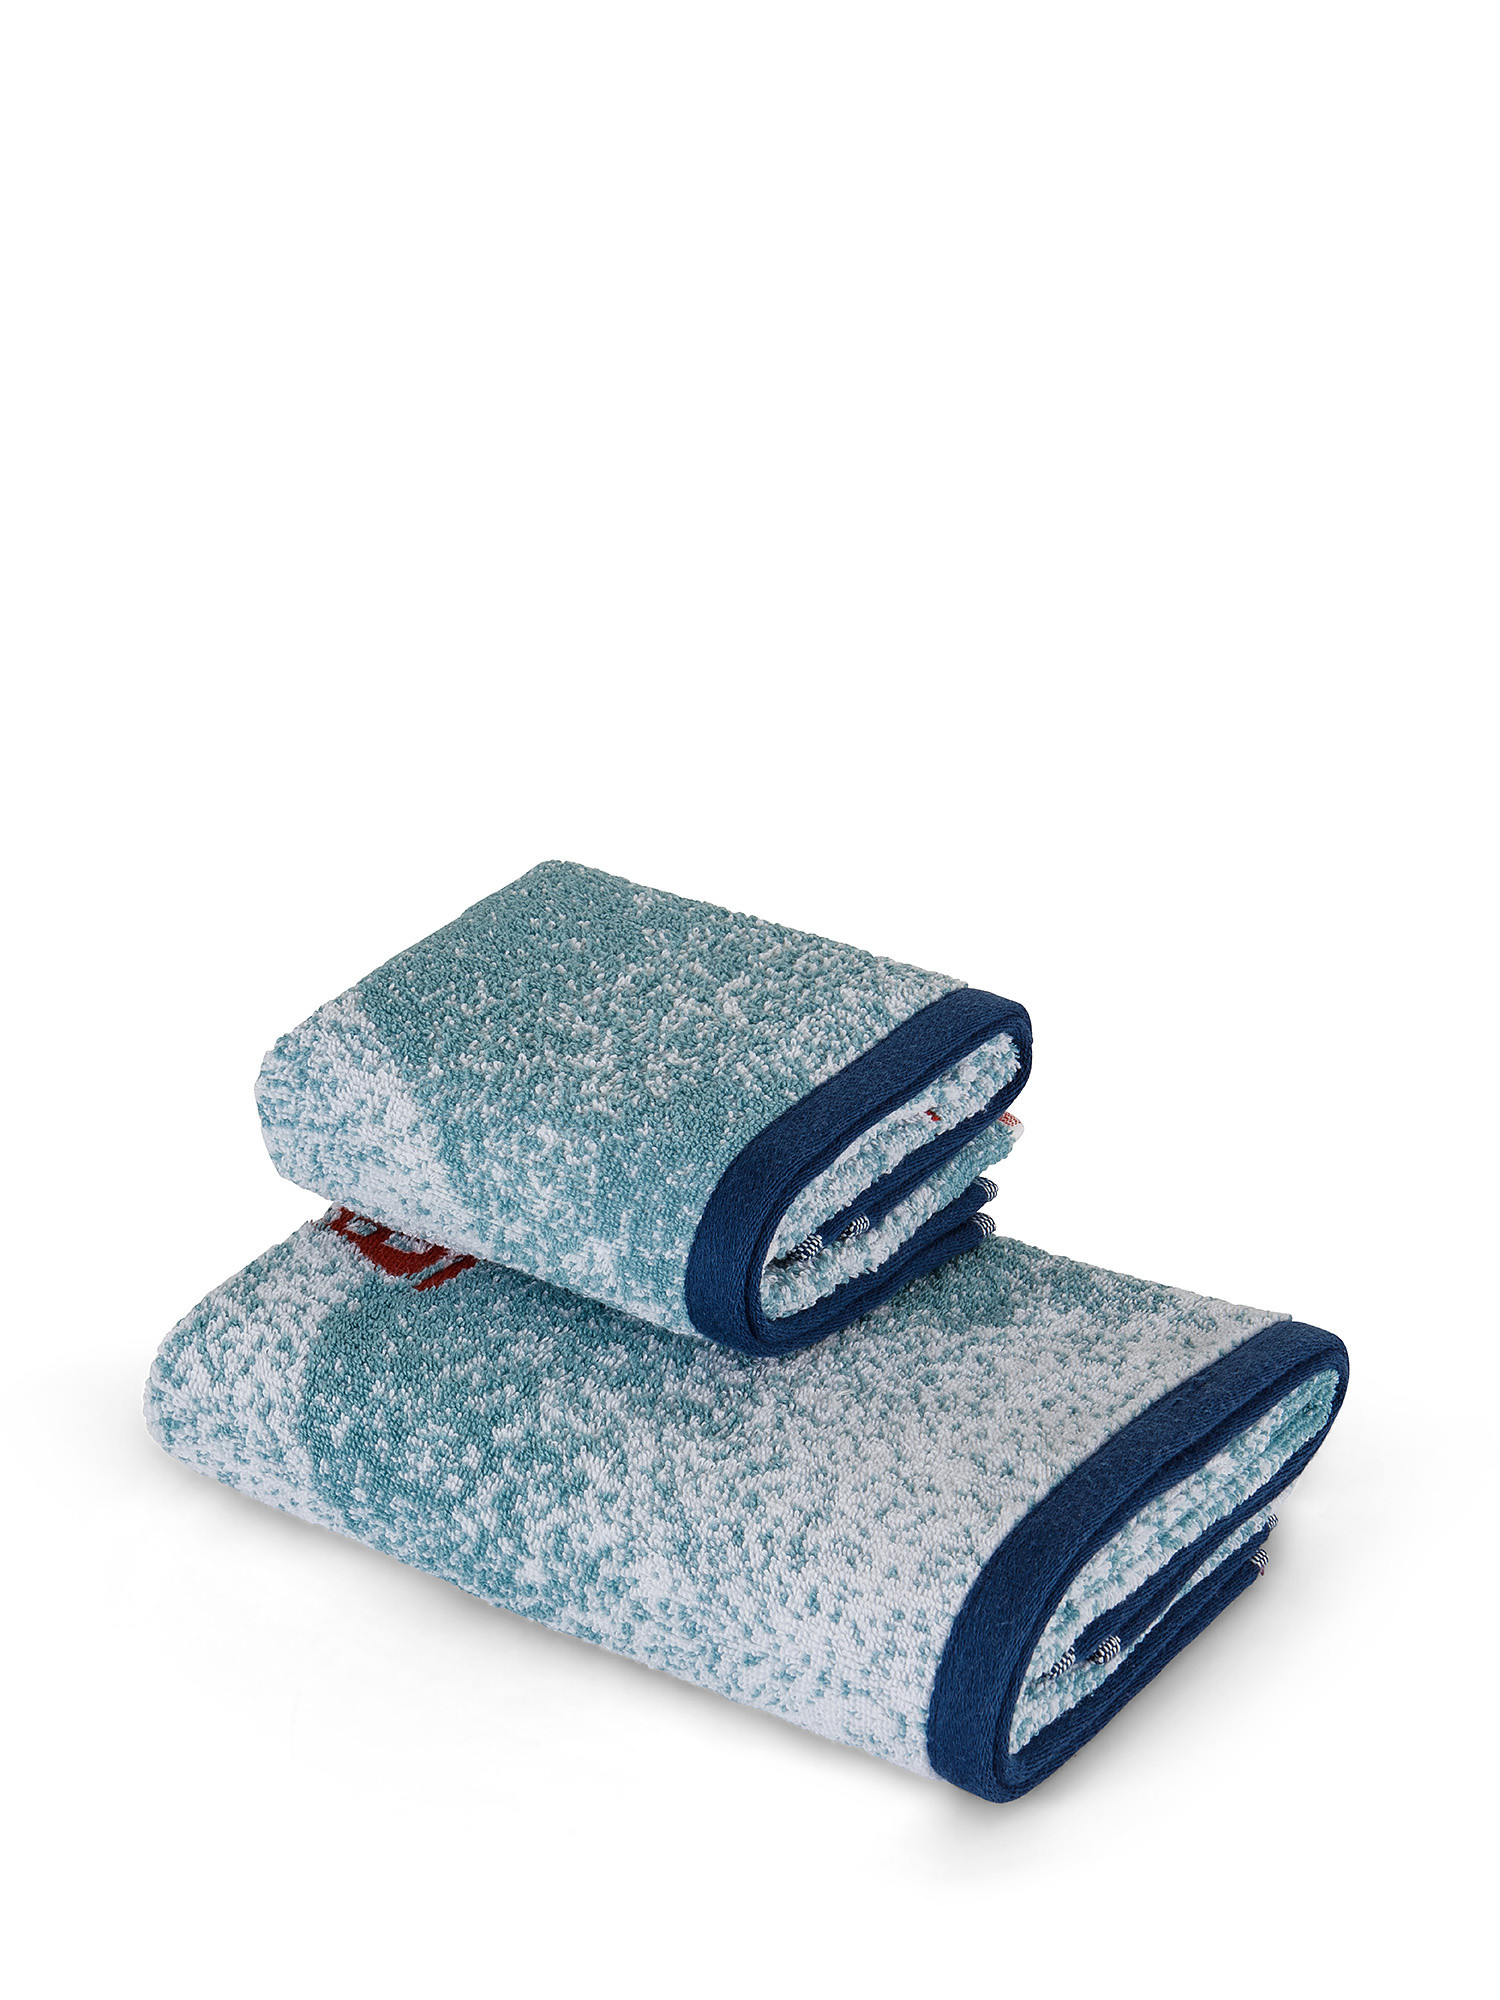 Asciugamano cotone velour motivo barchette, Blu chiaro, large